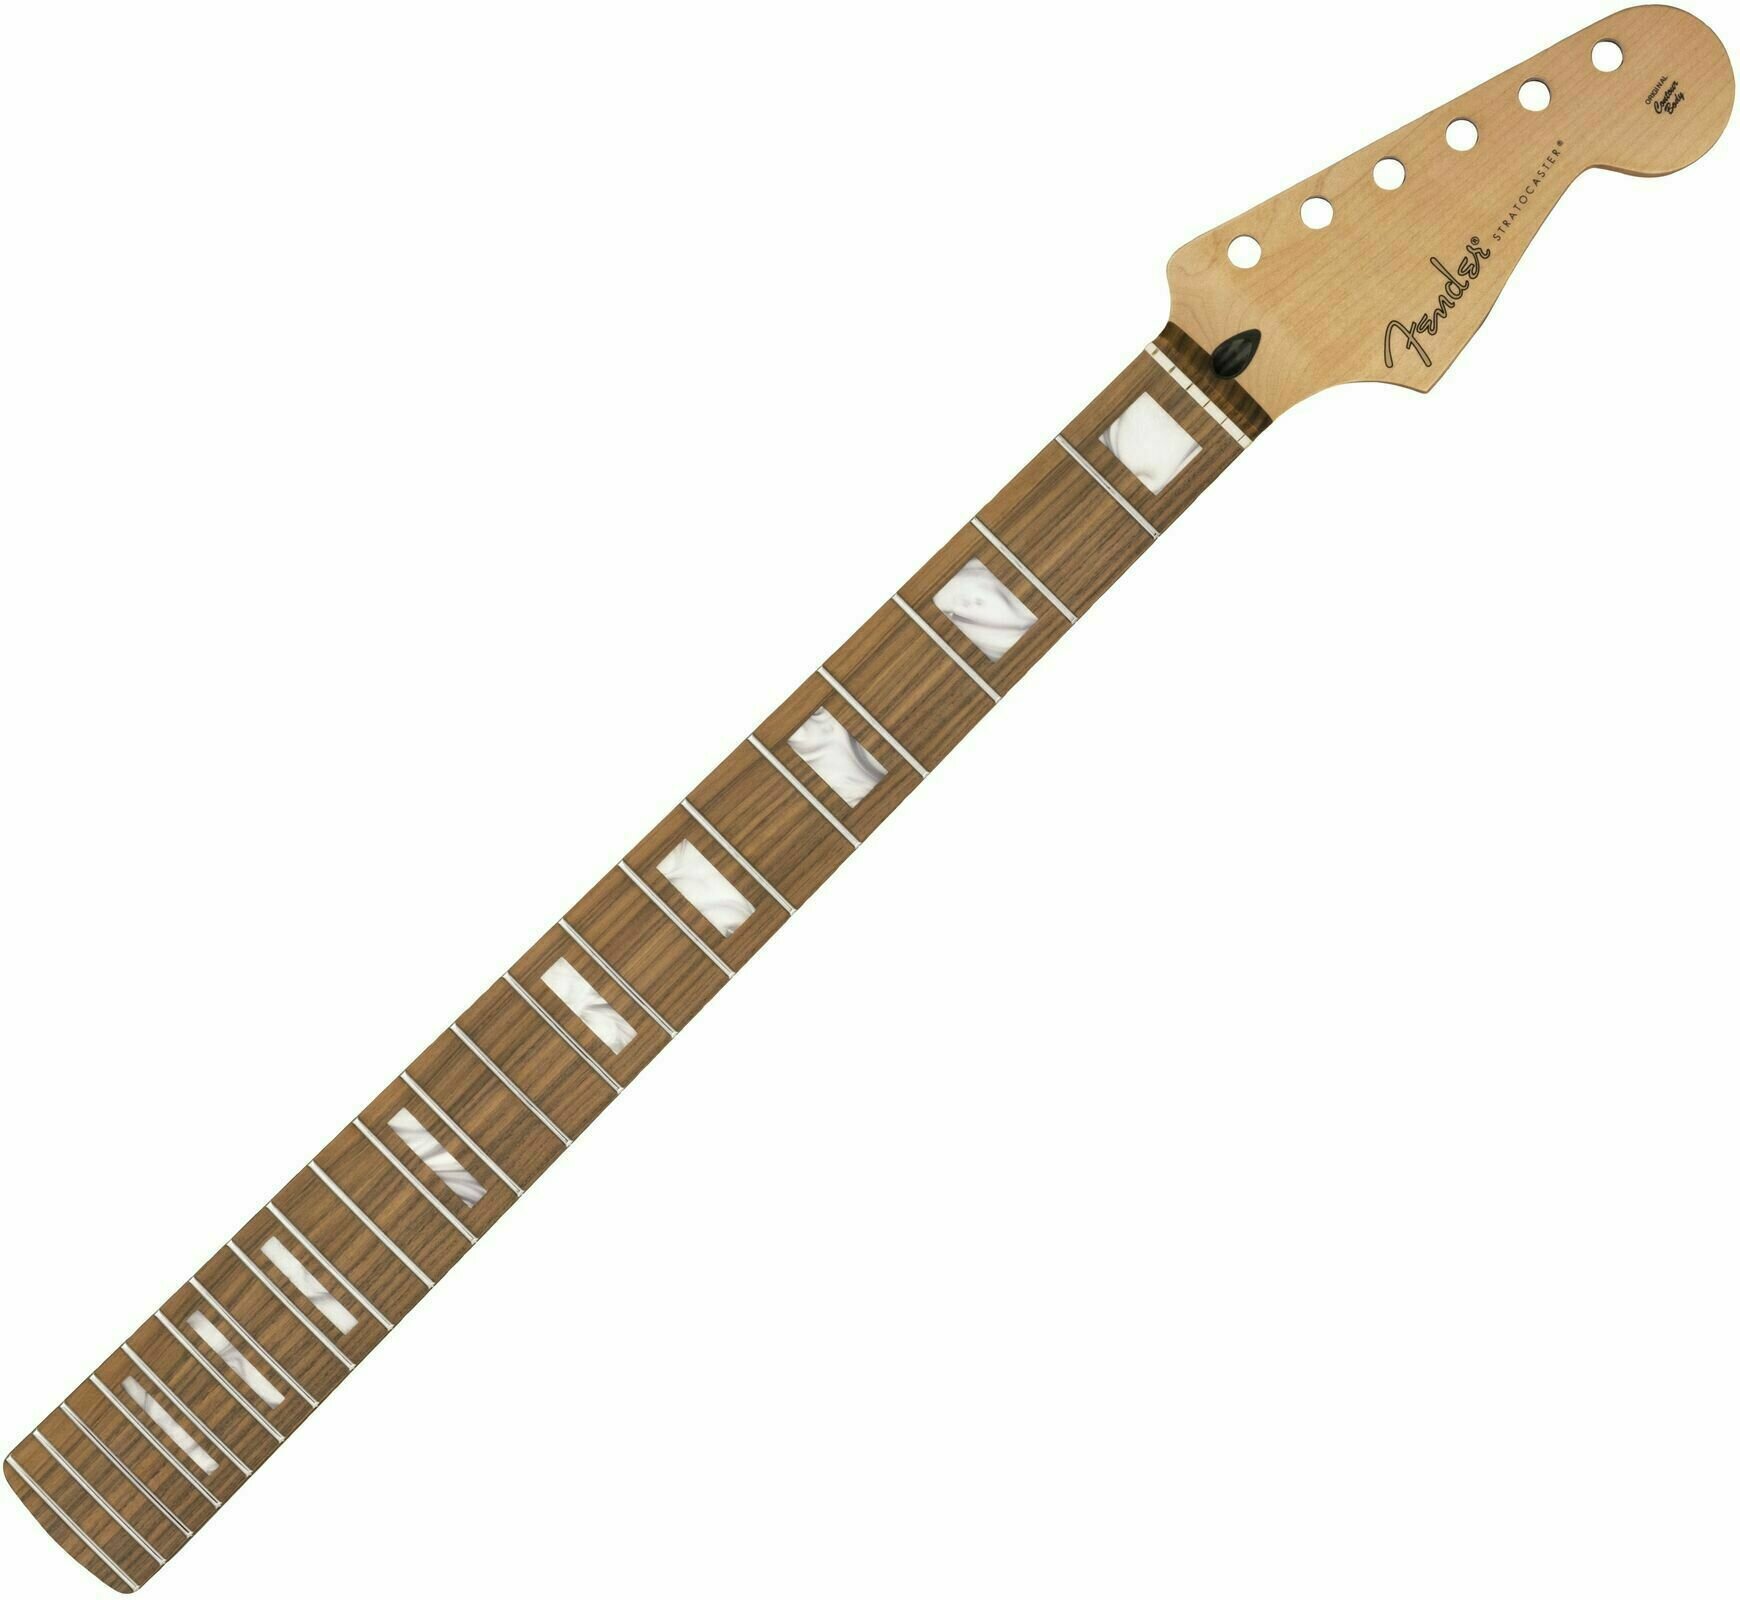 Hals für Gitarre Fender Player Series Stratocaster Neck Block Inlays Pau Ferro 22 Pau Ferro Hals für Gitarre